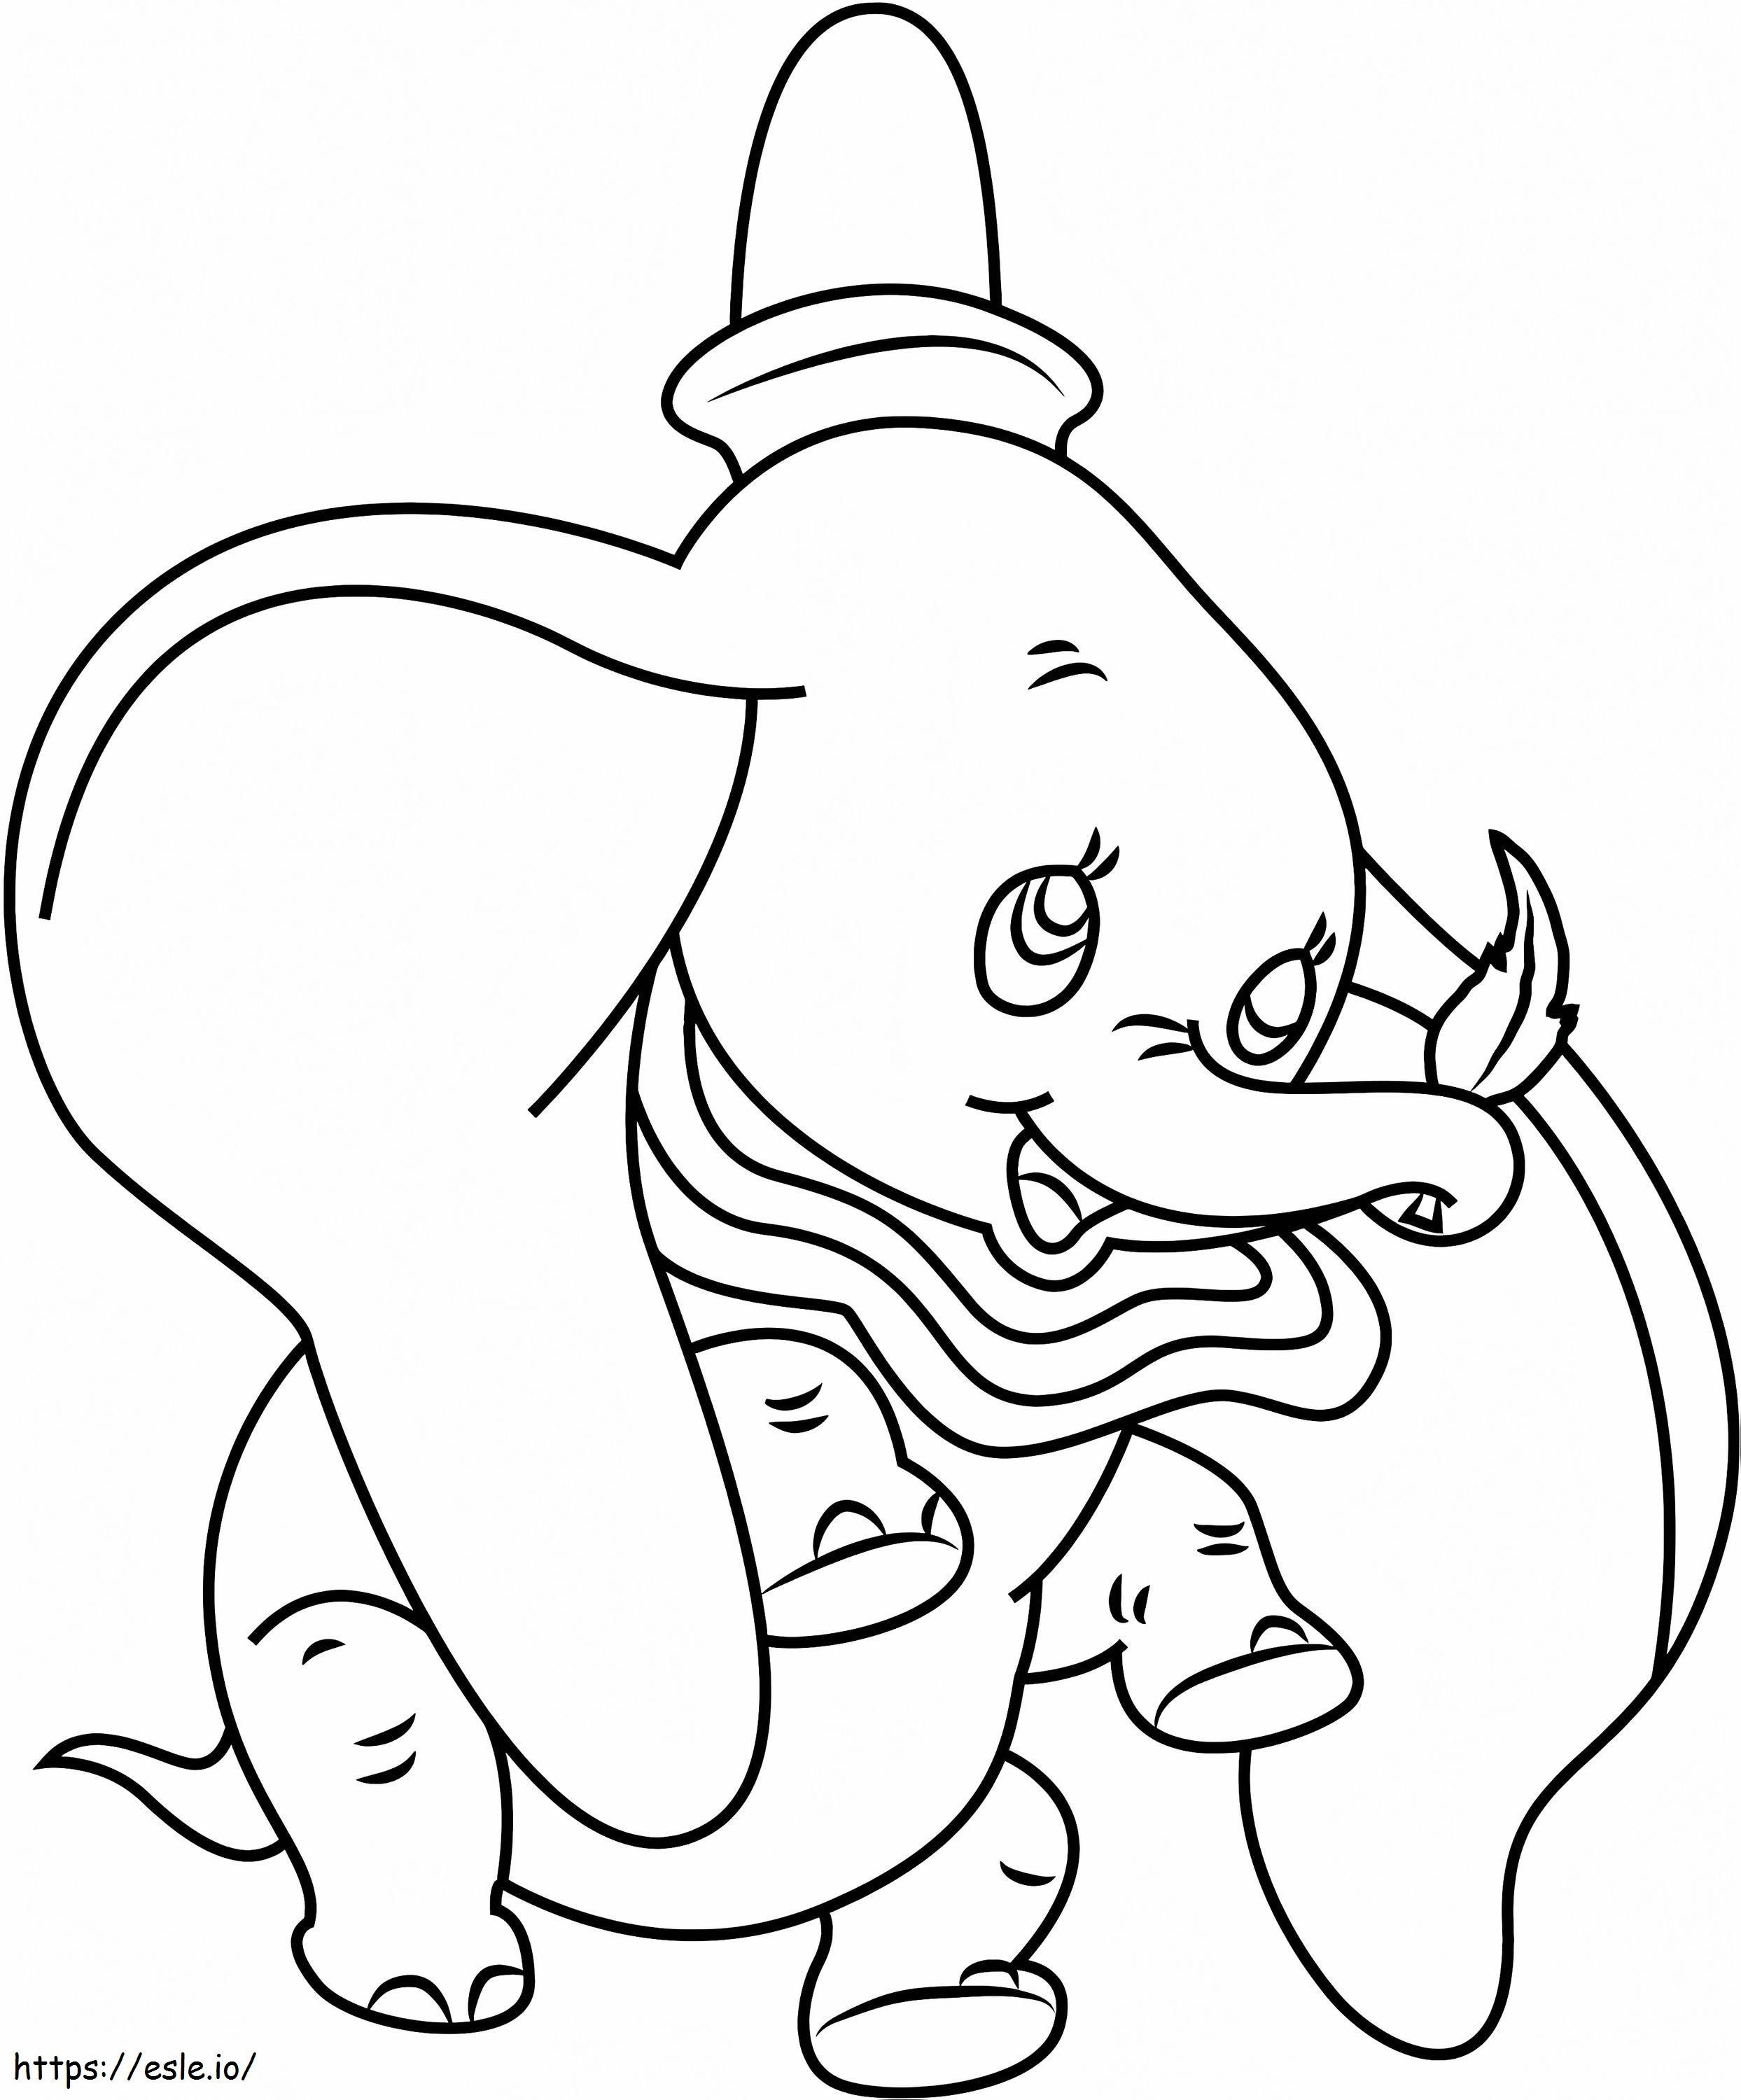 1530929502 Dumbo trzymający kartkę A4 kolorowanka